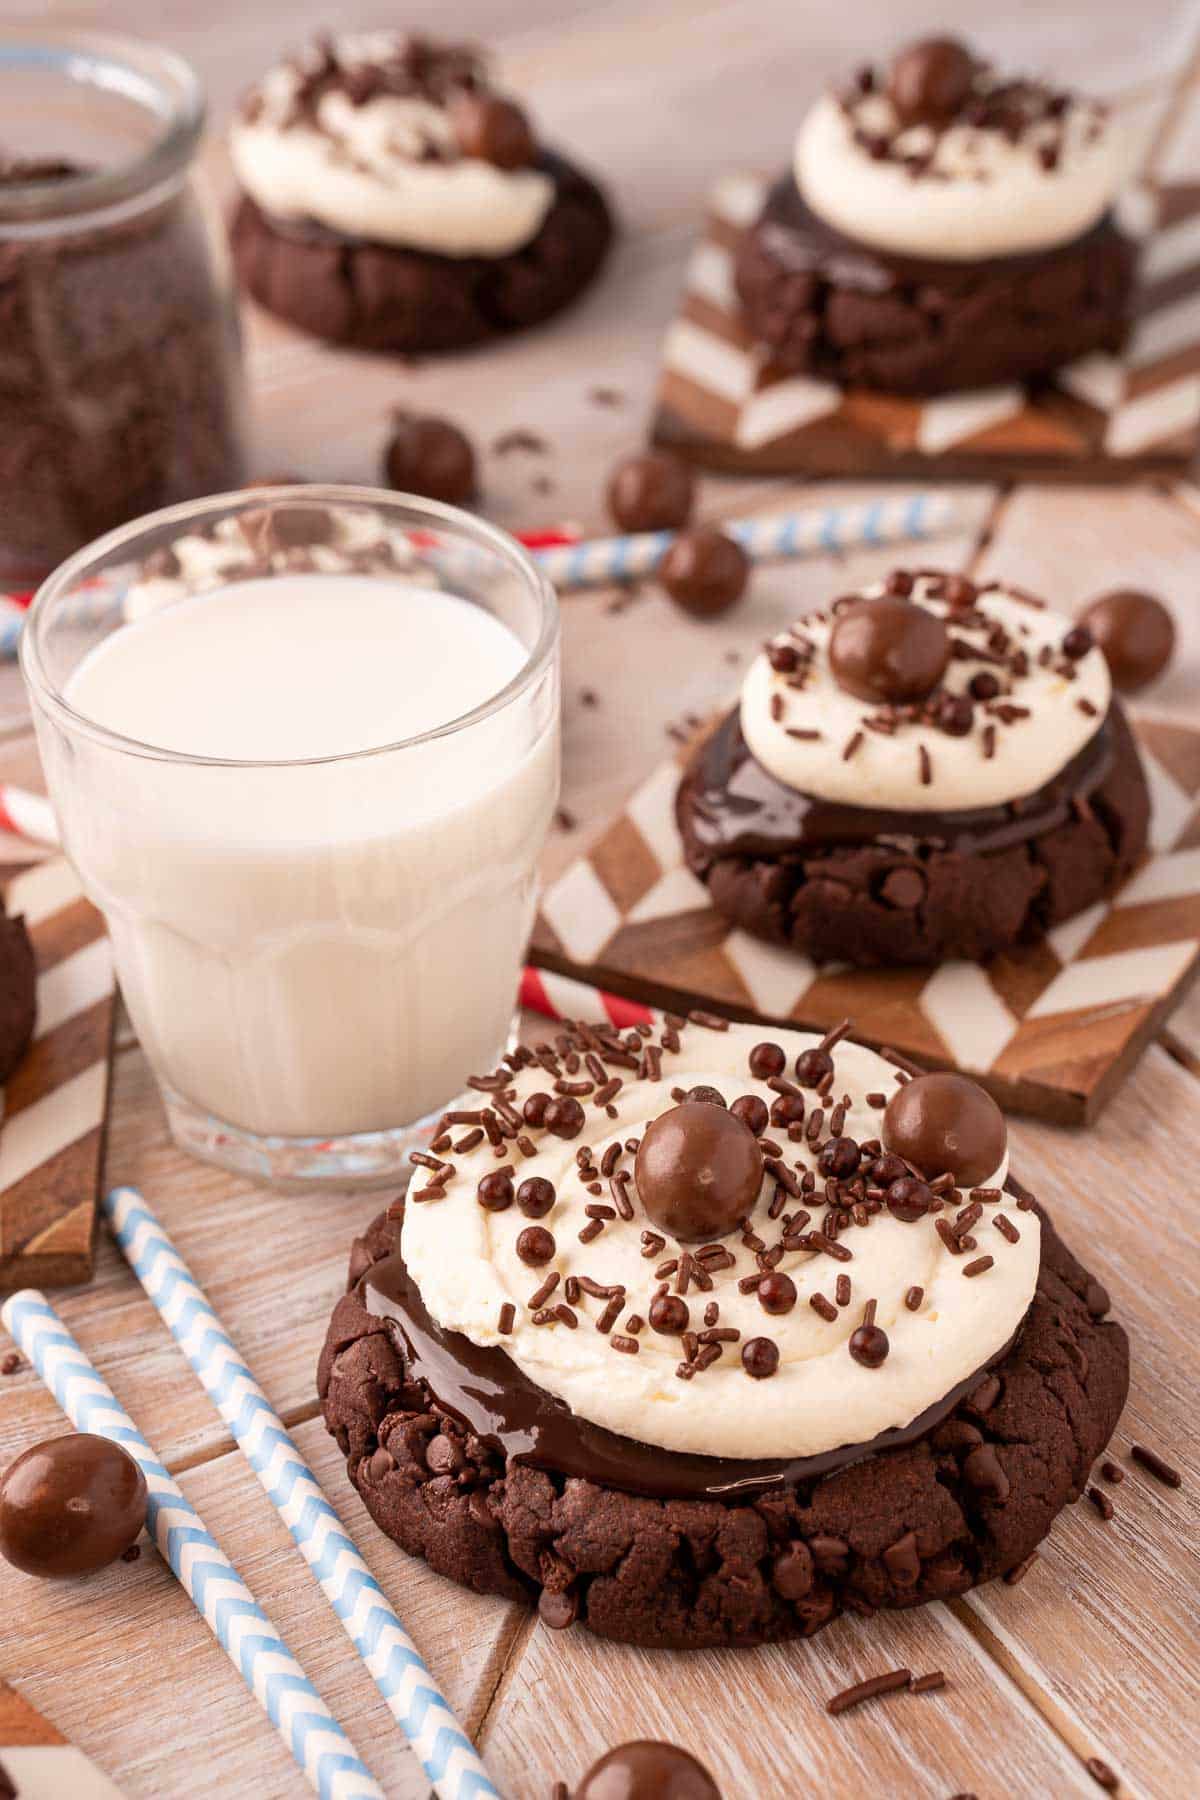 Chocolate milkshake cookies on a table.